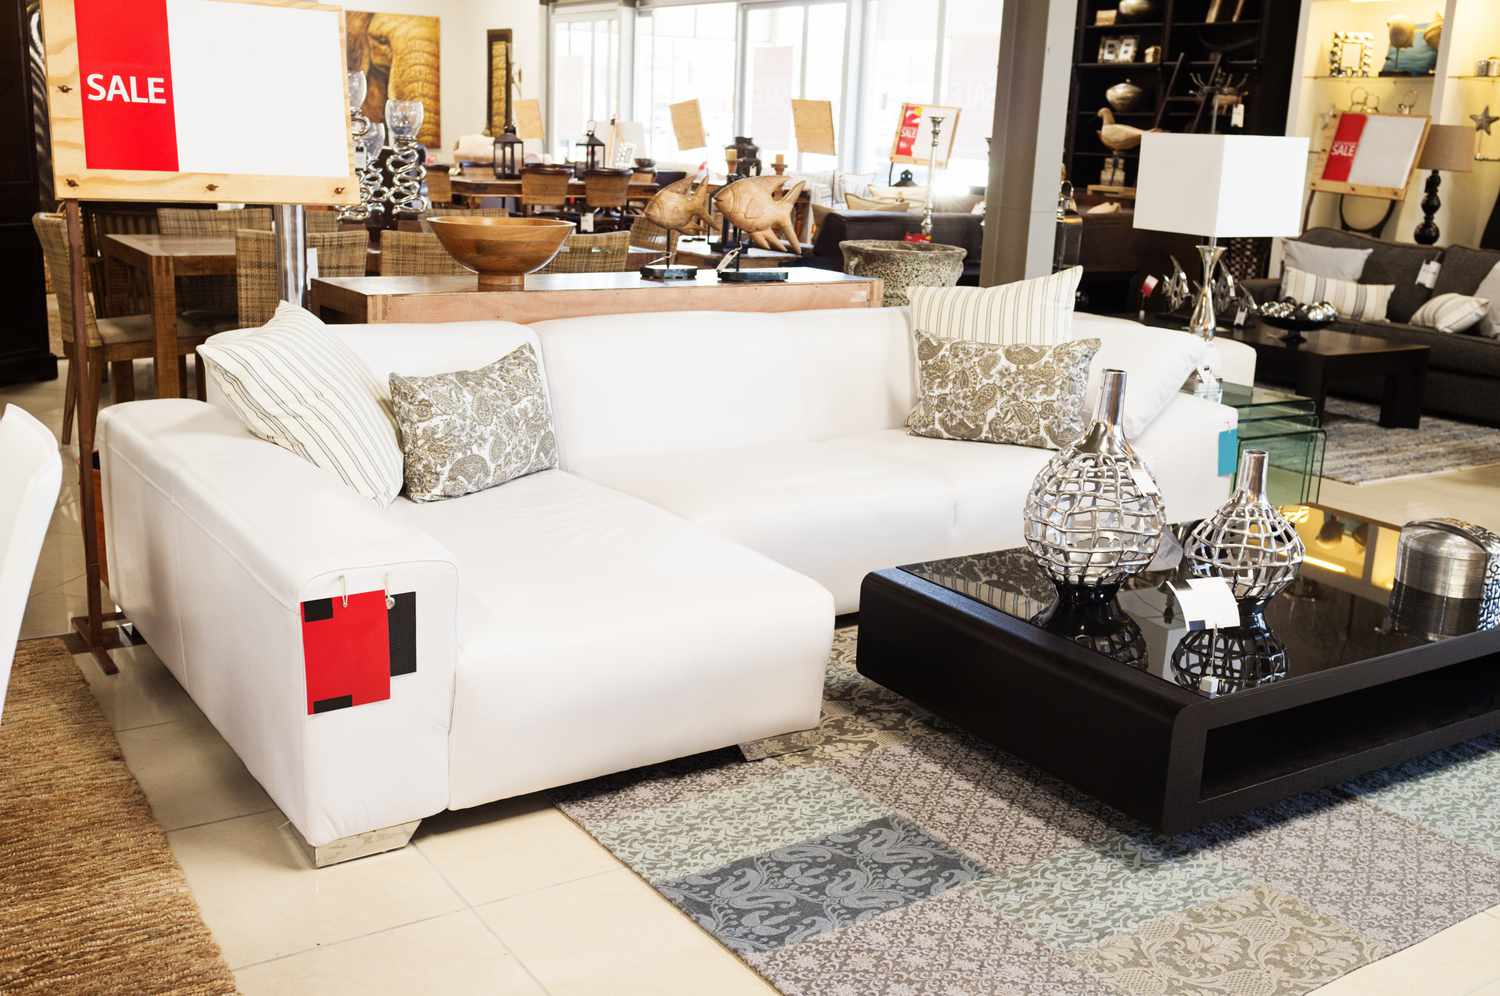 Ein schönes Möbelarrangement mit einer weißen Couch und einem Couchtisch in einem Möbelhaus.